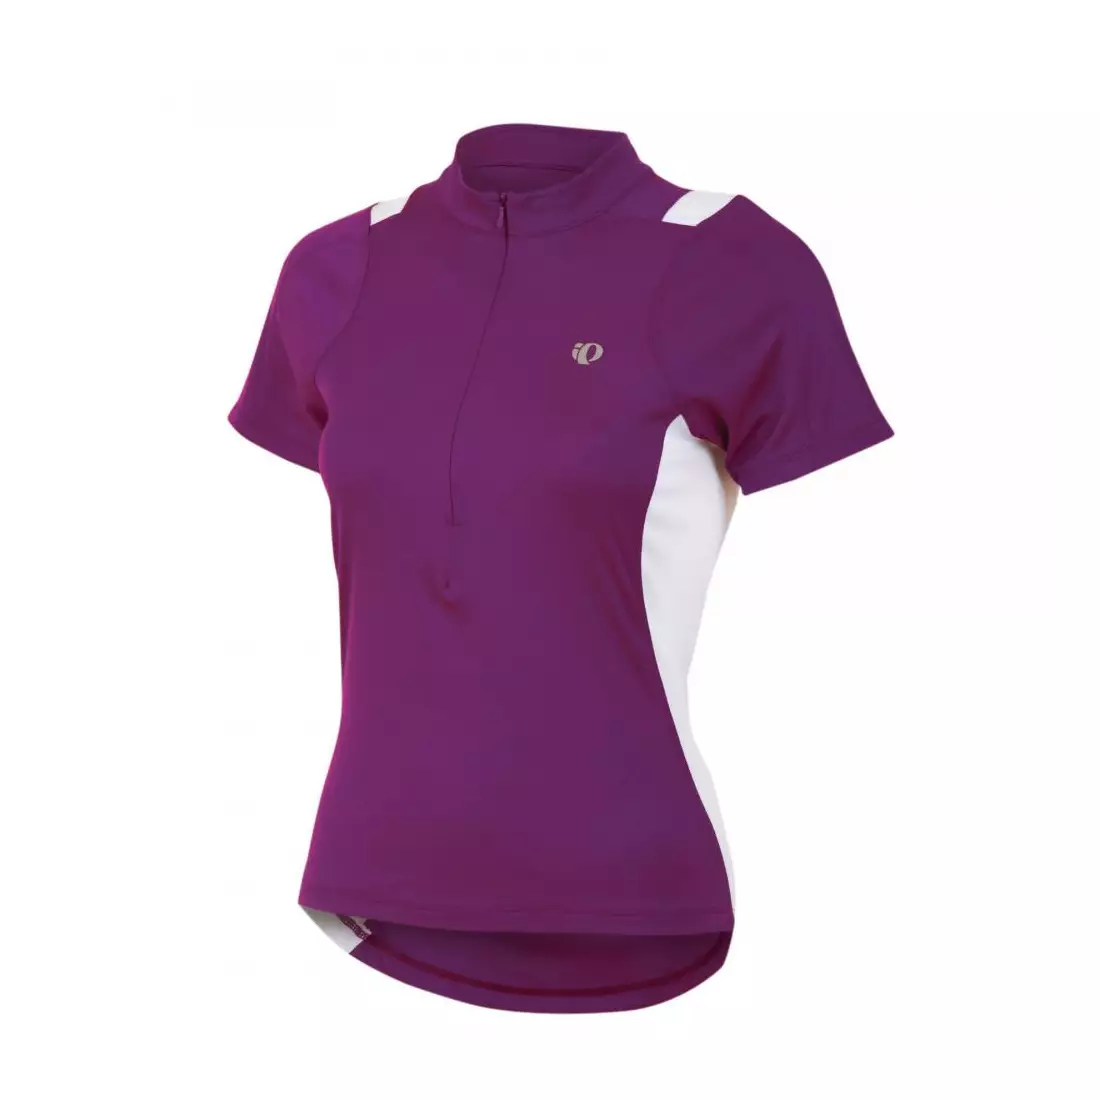 PEARL IZUMI - 11221316-3MV SELECT - women's cycling jersey, purple